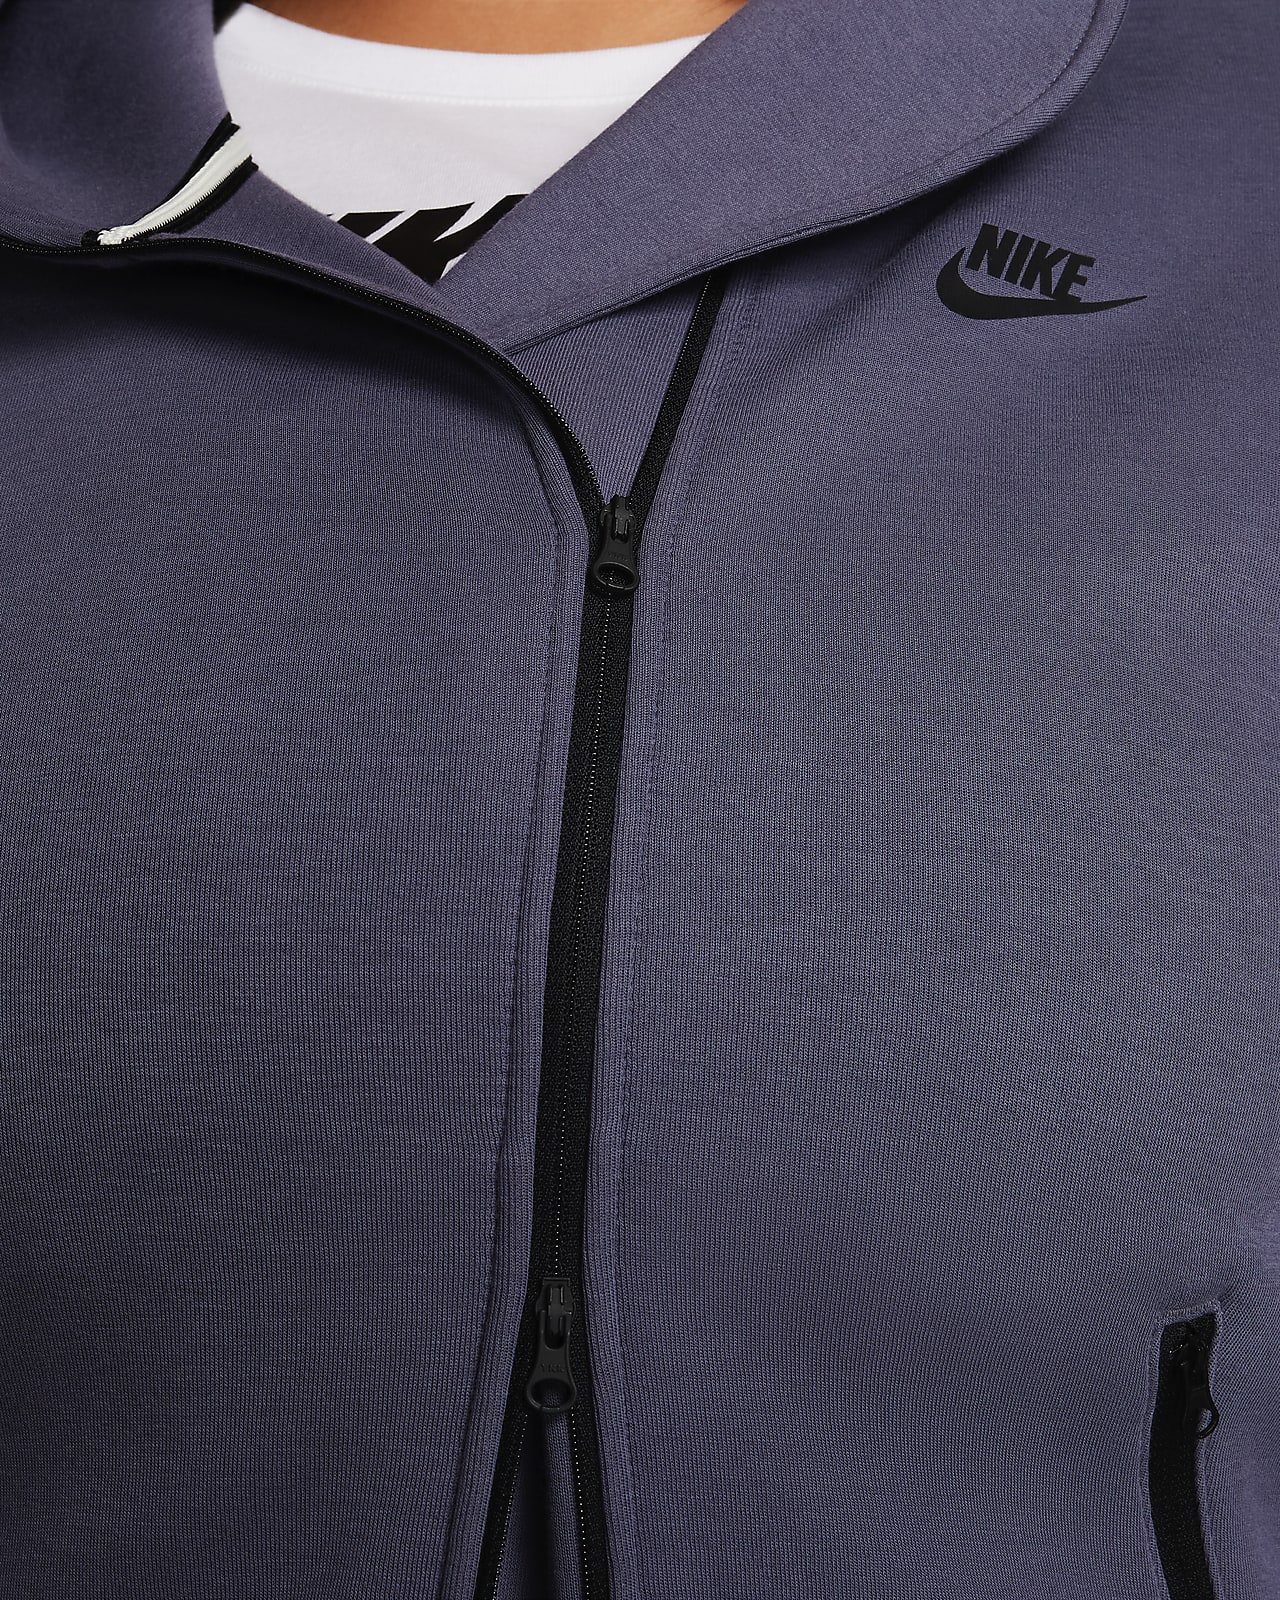 Nike Sportswear Tech Fleece Women's Oversized Full-Zip Hoodie. Nike ID